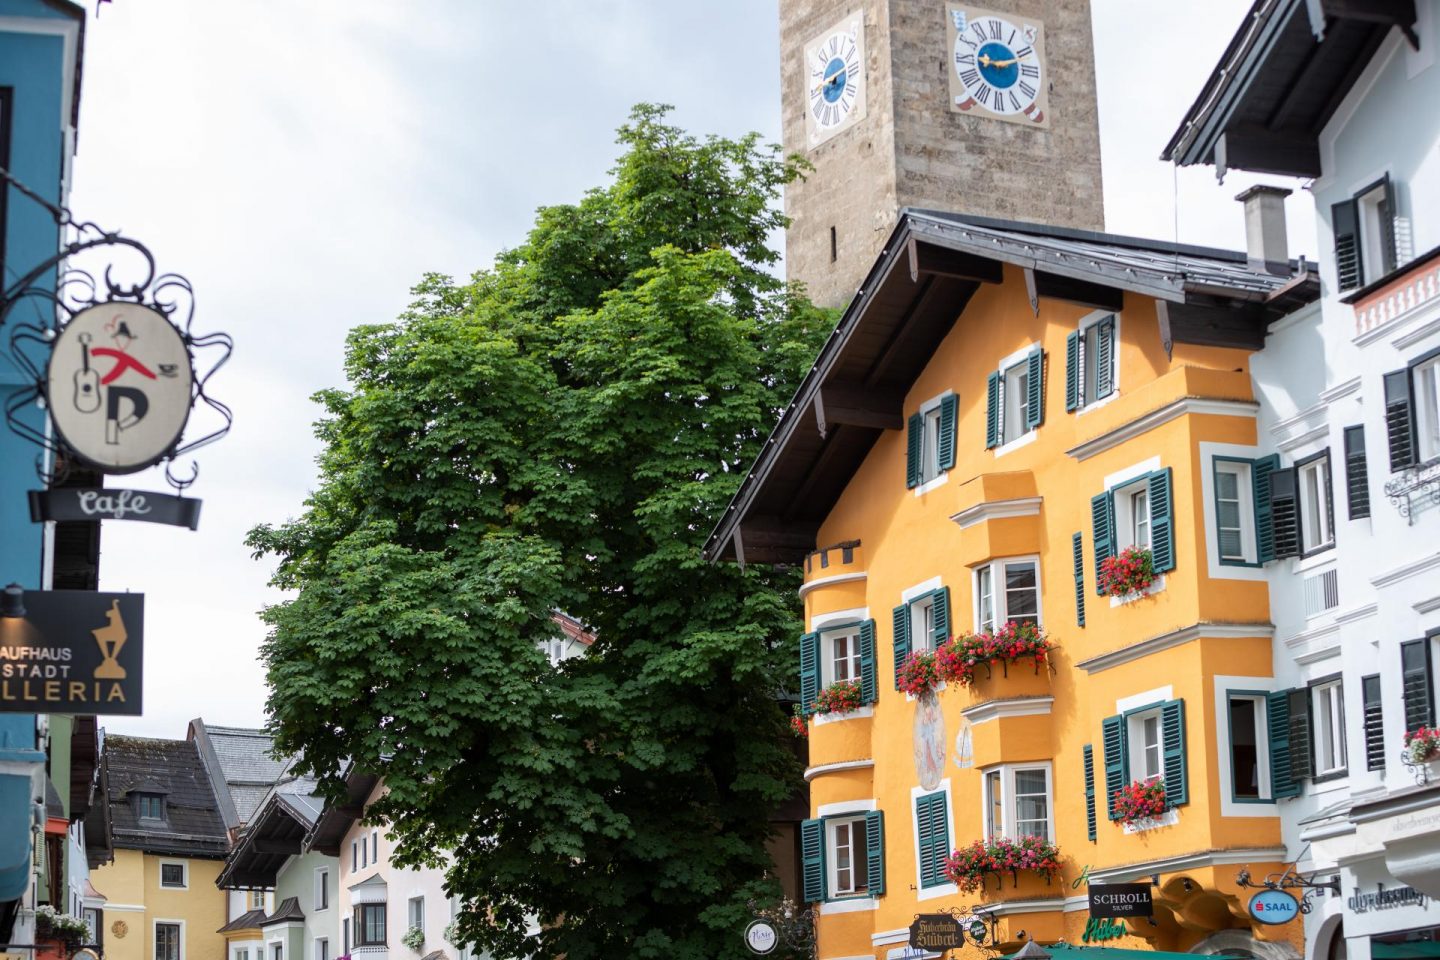 Guide to Kitzbühel, Austrian Alps | Summer Adventures in Kitzbühel Tyrol